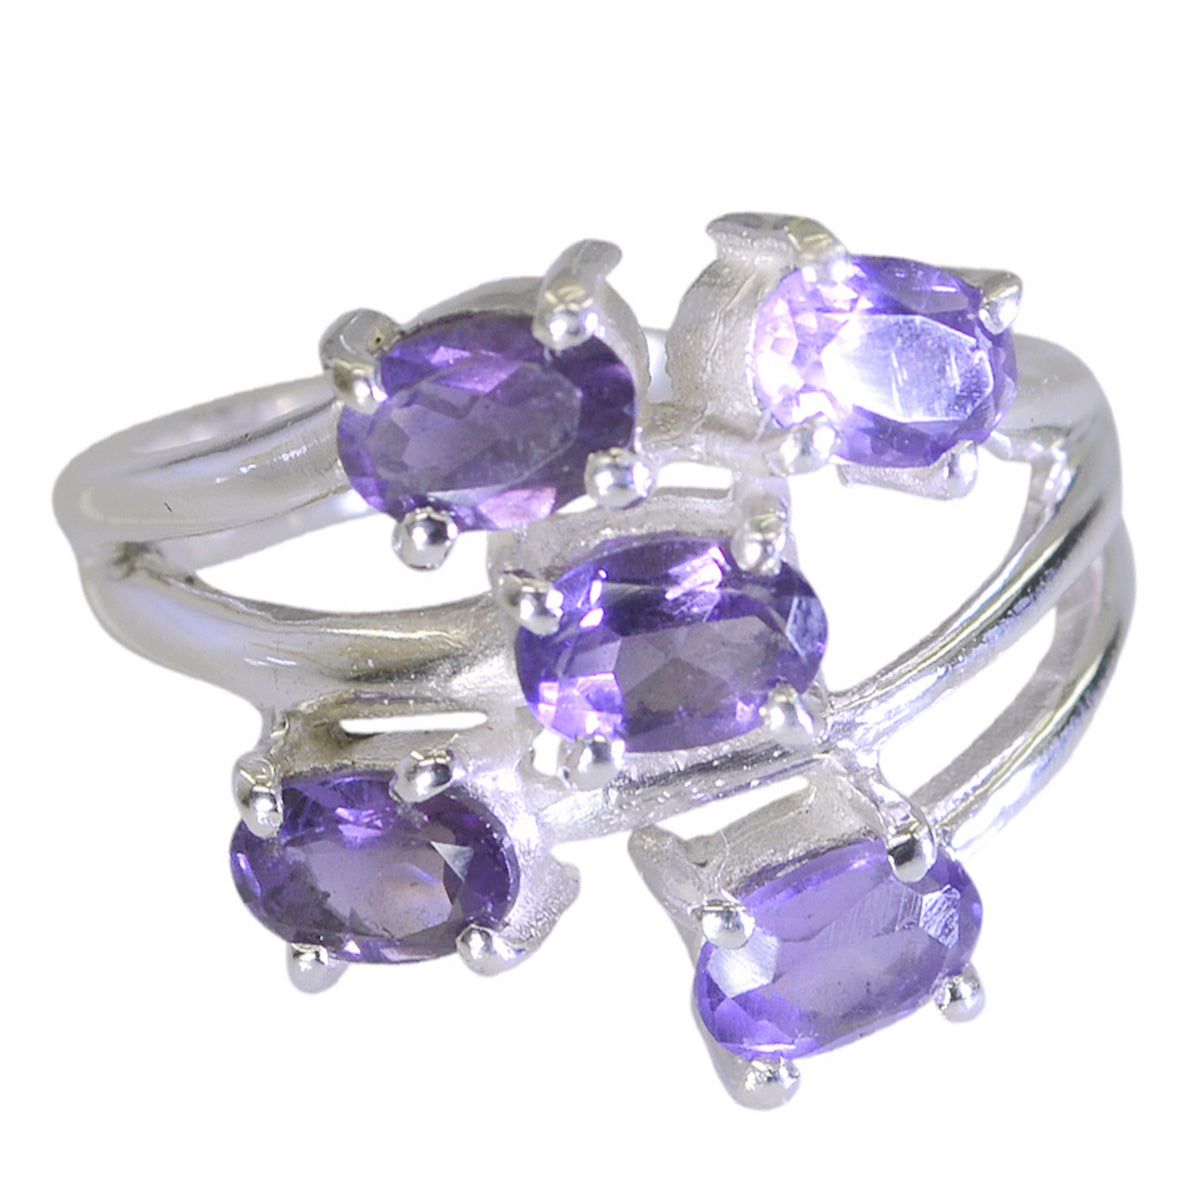 Riyo Teasing Gems Amethyst Sterling Silver Rings Design Jewelry